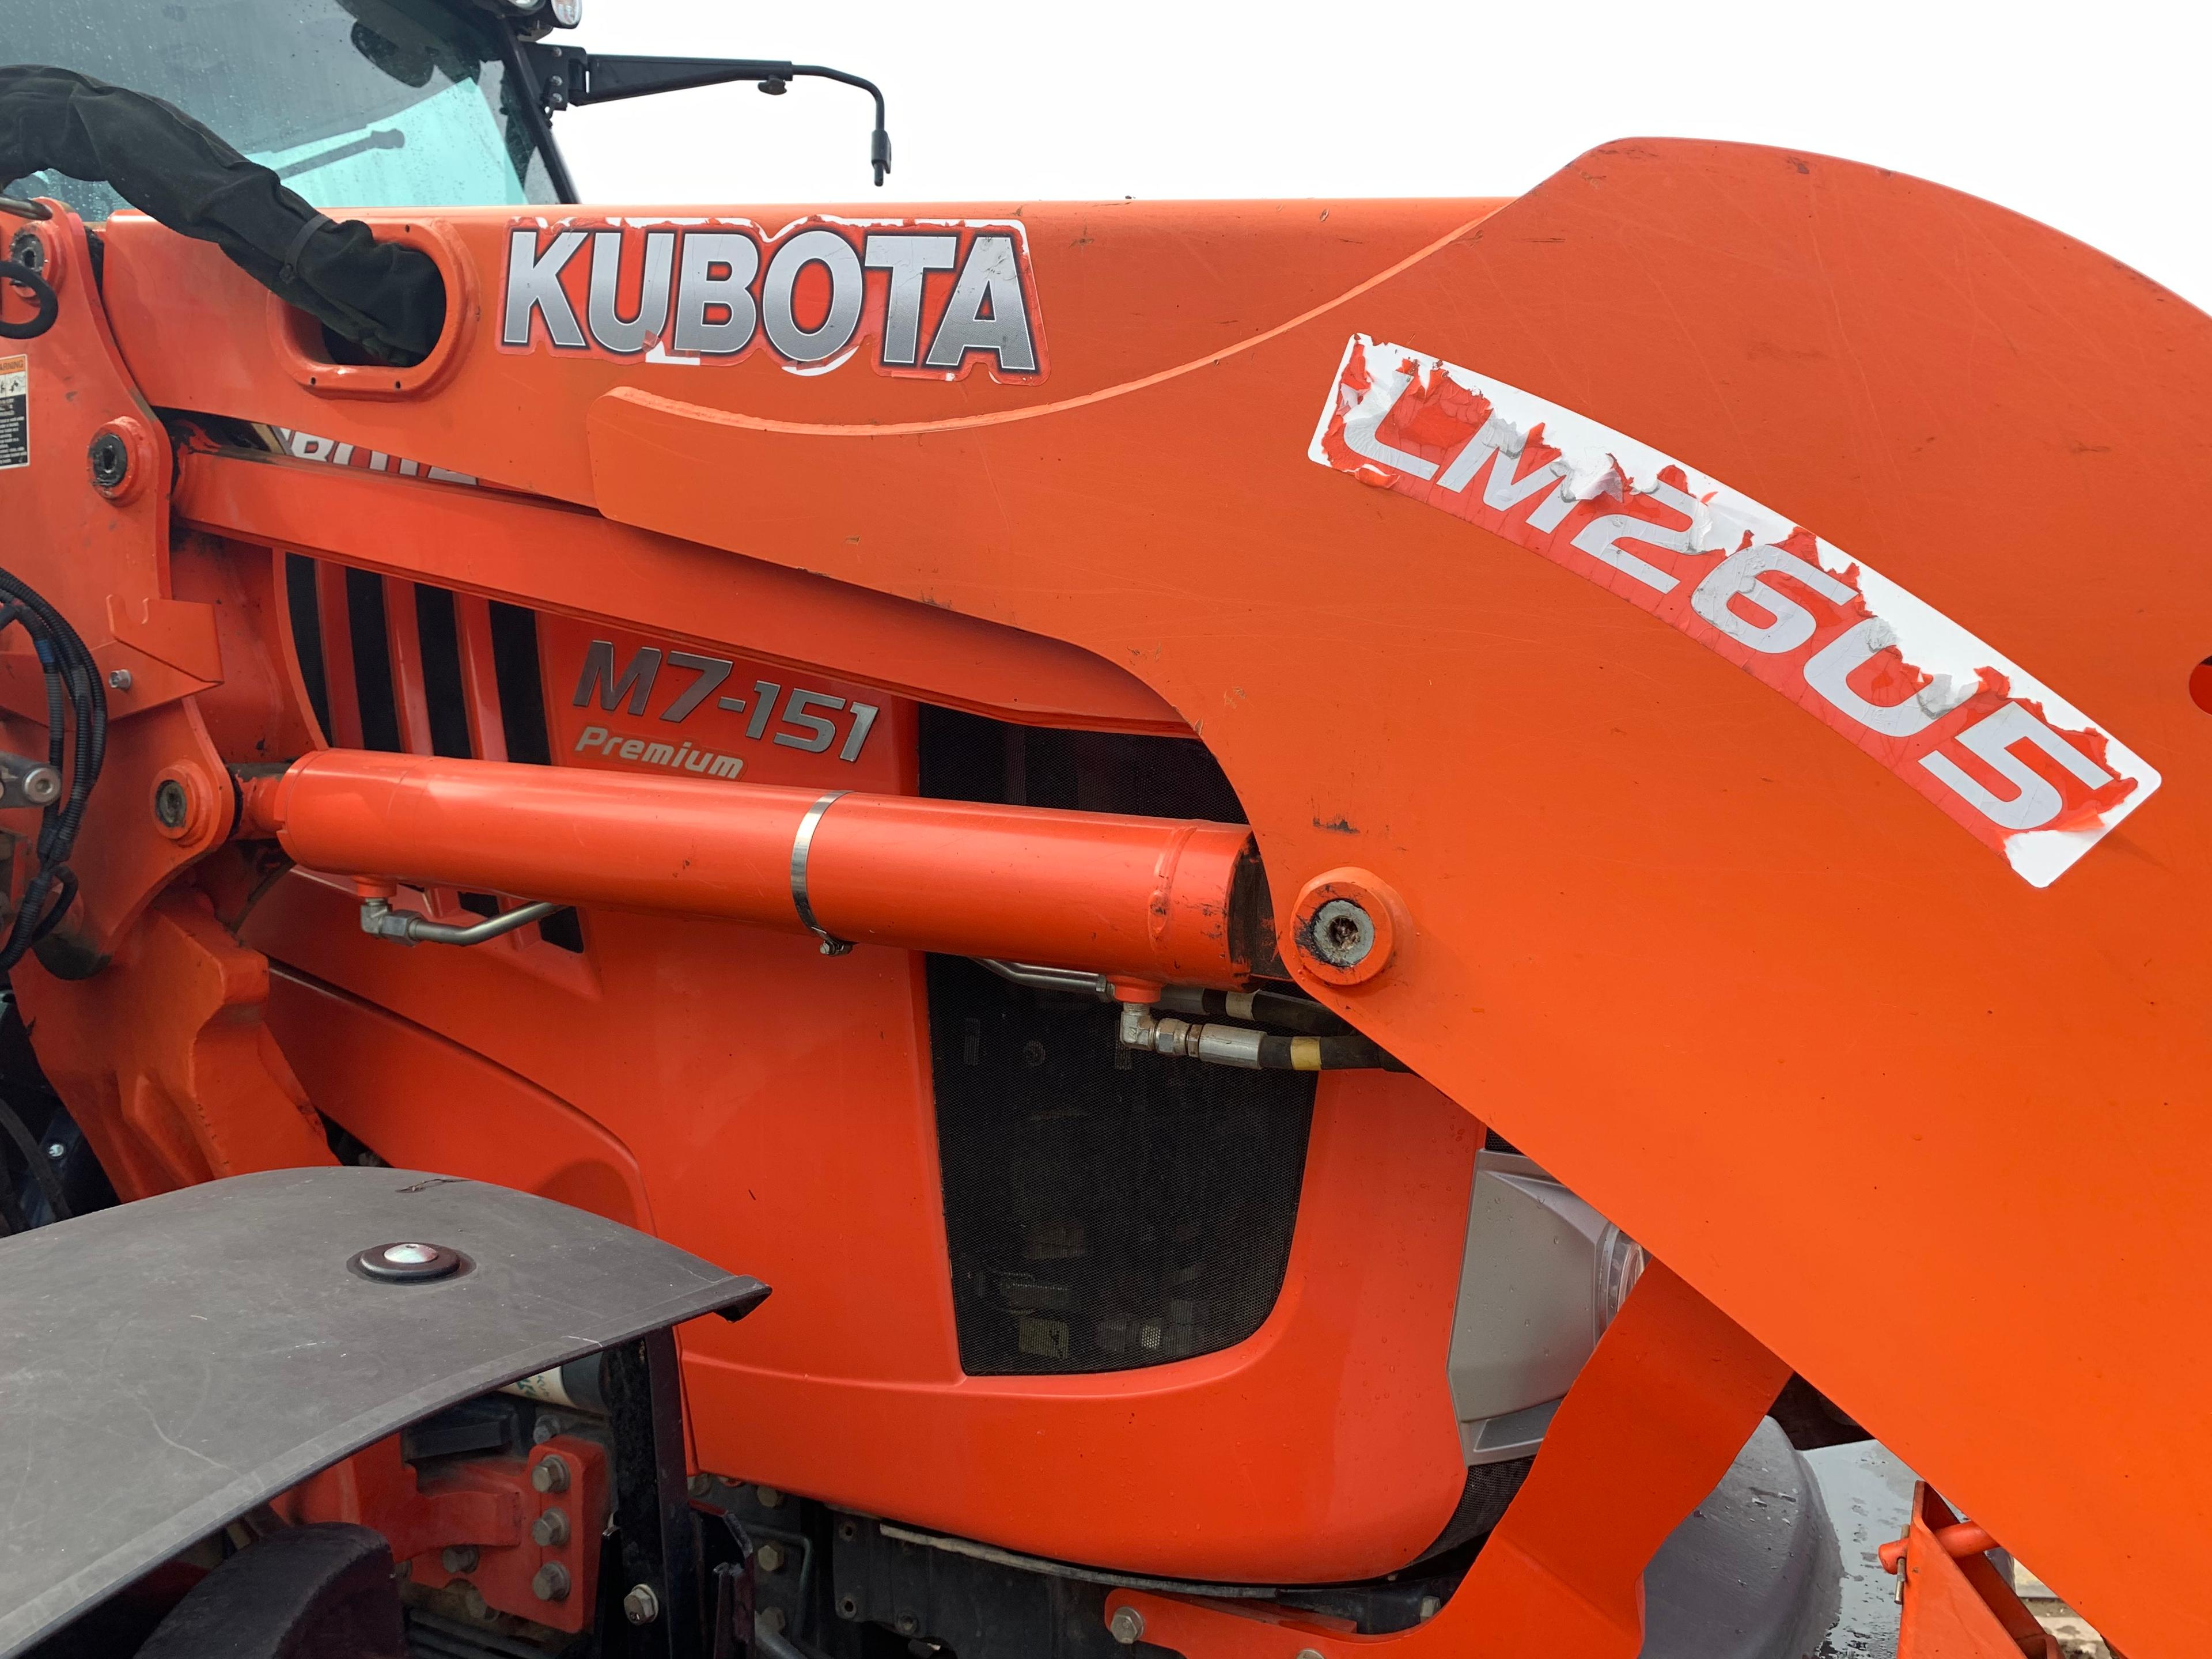 Kubota M7-151 Premium Tractor